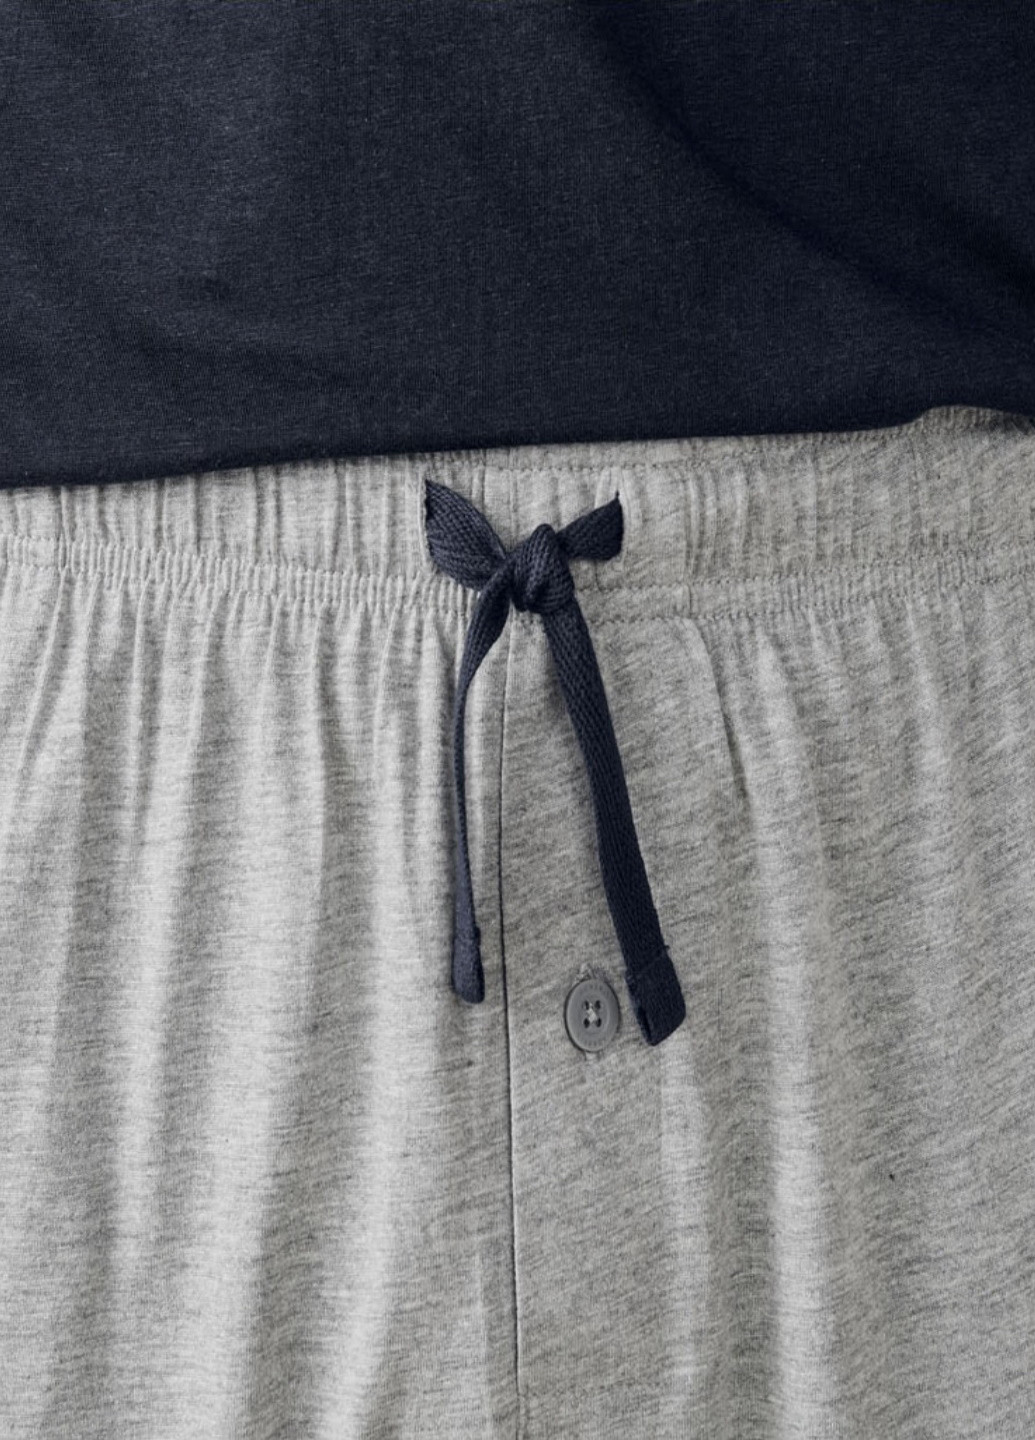 Пижама (футболка, шорты) Livergy футболка + брюки однотонная комбинированная домашняя трикотаж, хлопок